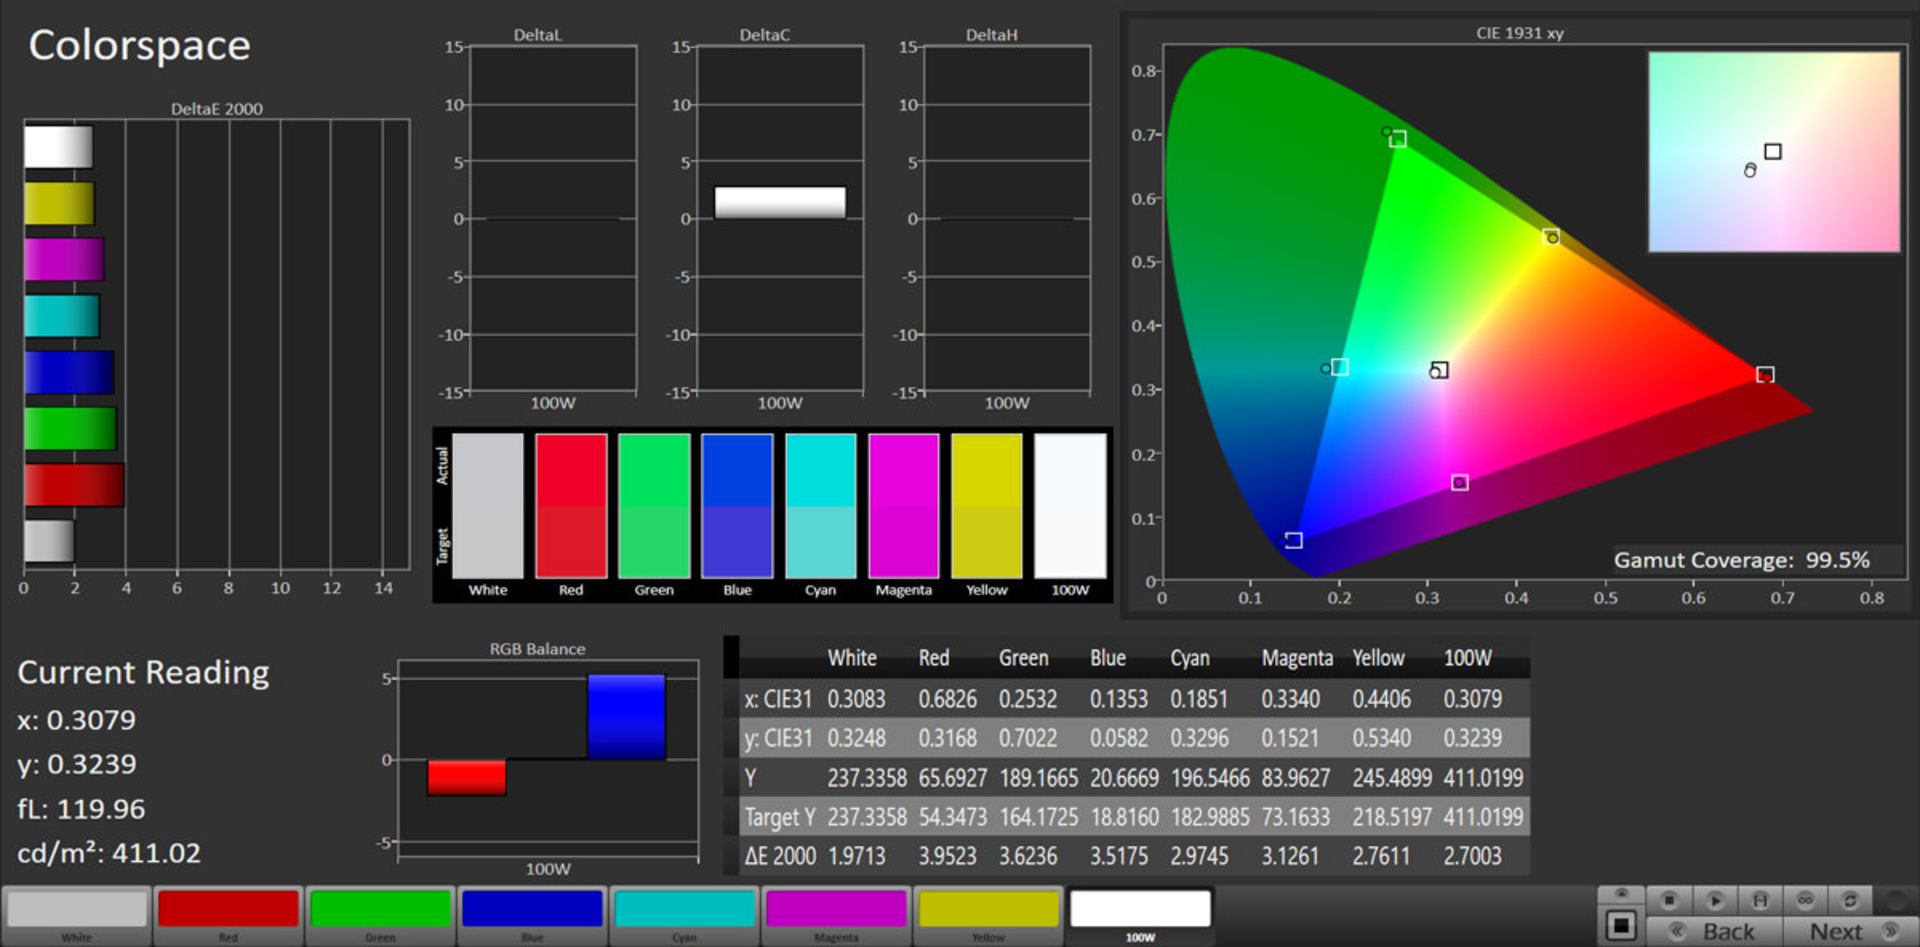 مرجع متخصصين ايران آزمايش پوشش فضاي رنگ نمايشگر گلكسي نوت ۲۰ اولترا در حالت Vivid و فضاي رنگي DCI-P3